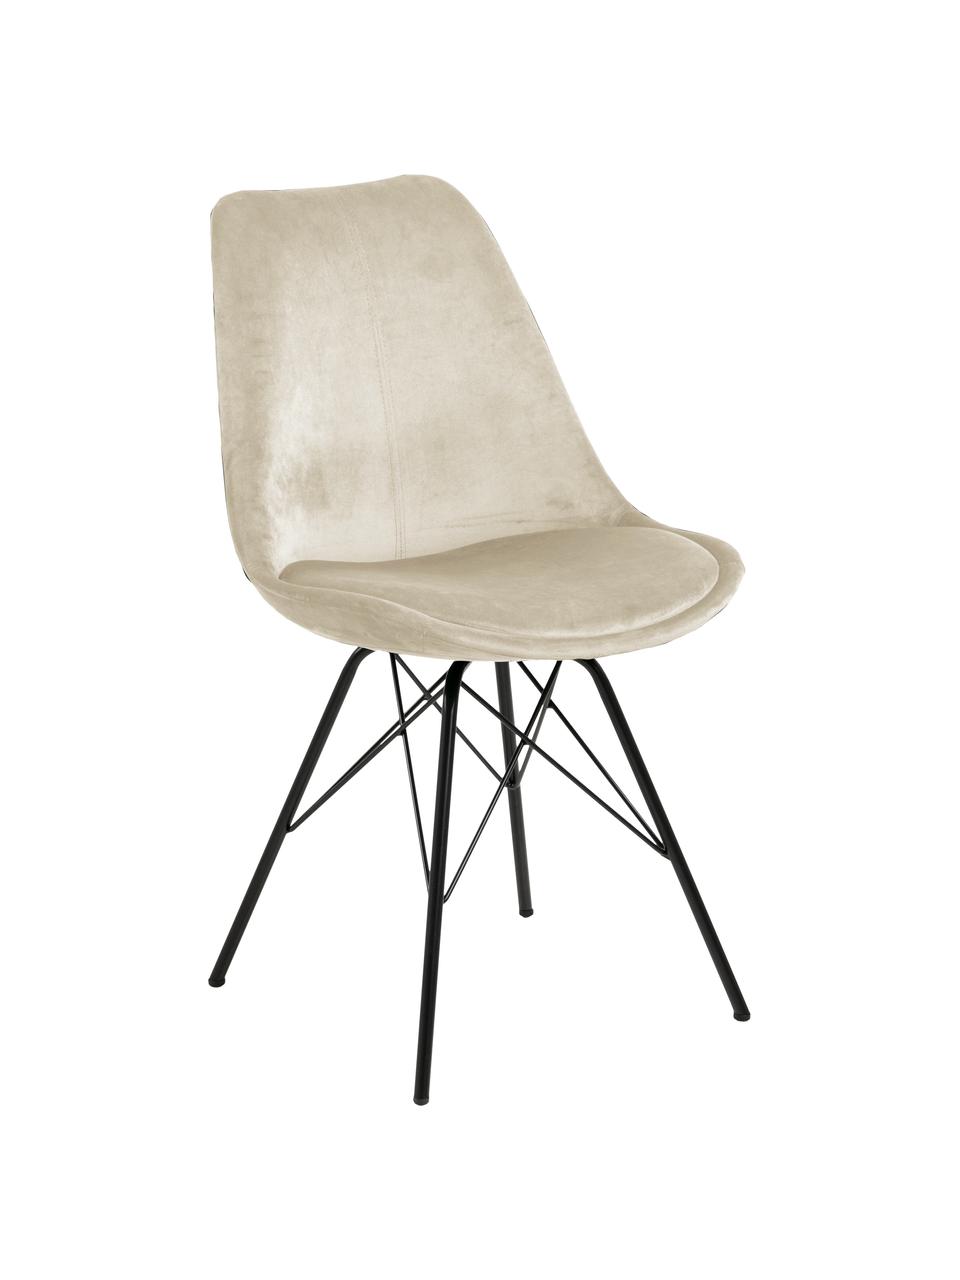 Fluwelen stoelen Eris met metalen poten, 2 stuks, Bekleding: polyester fluweel, Poten: gepoedercoat metaal, Fluweel beige, zwart, B 49 x D 54 cm